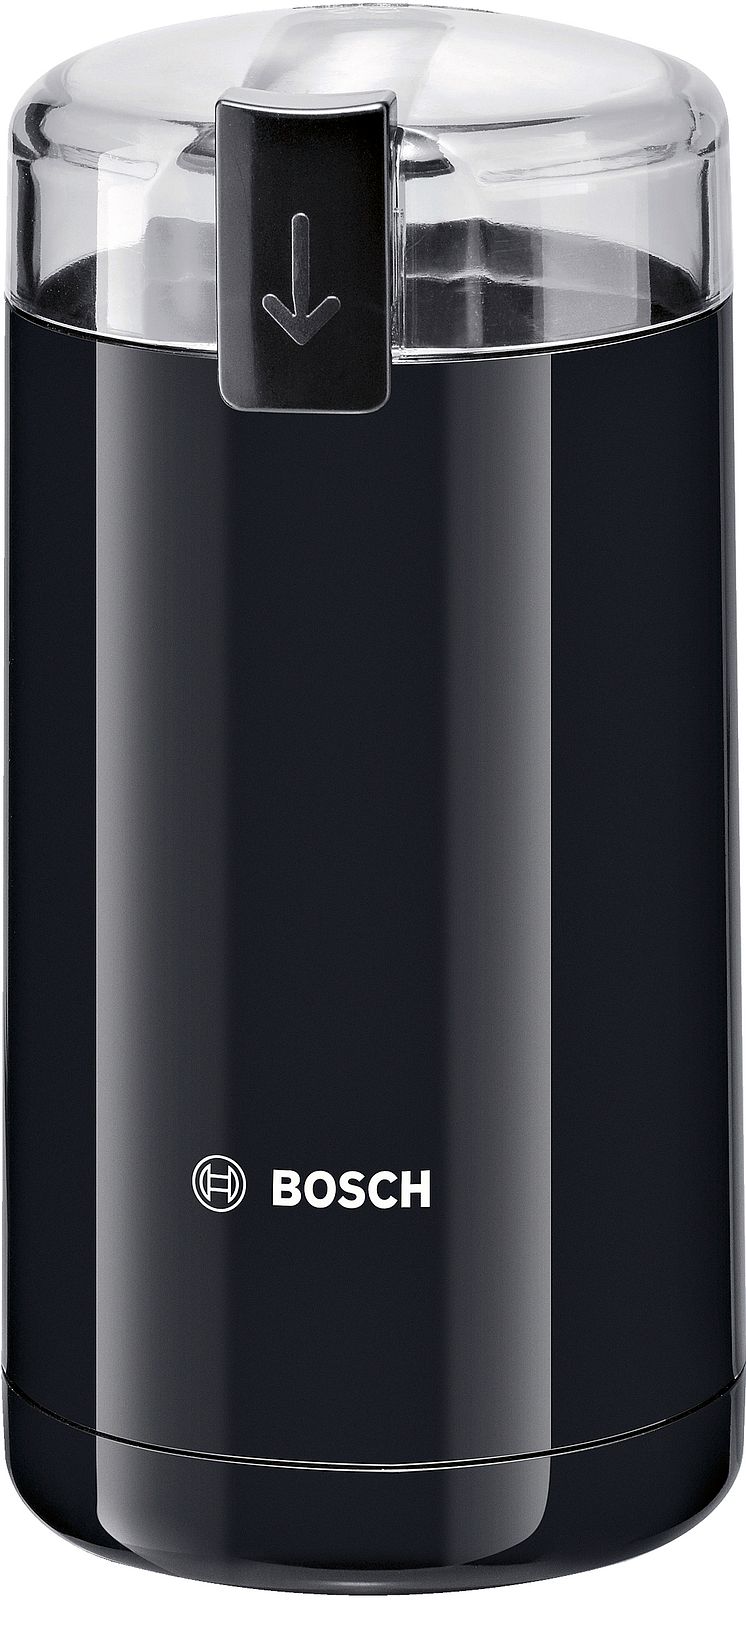 Bosch kaffekvarn